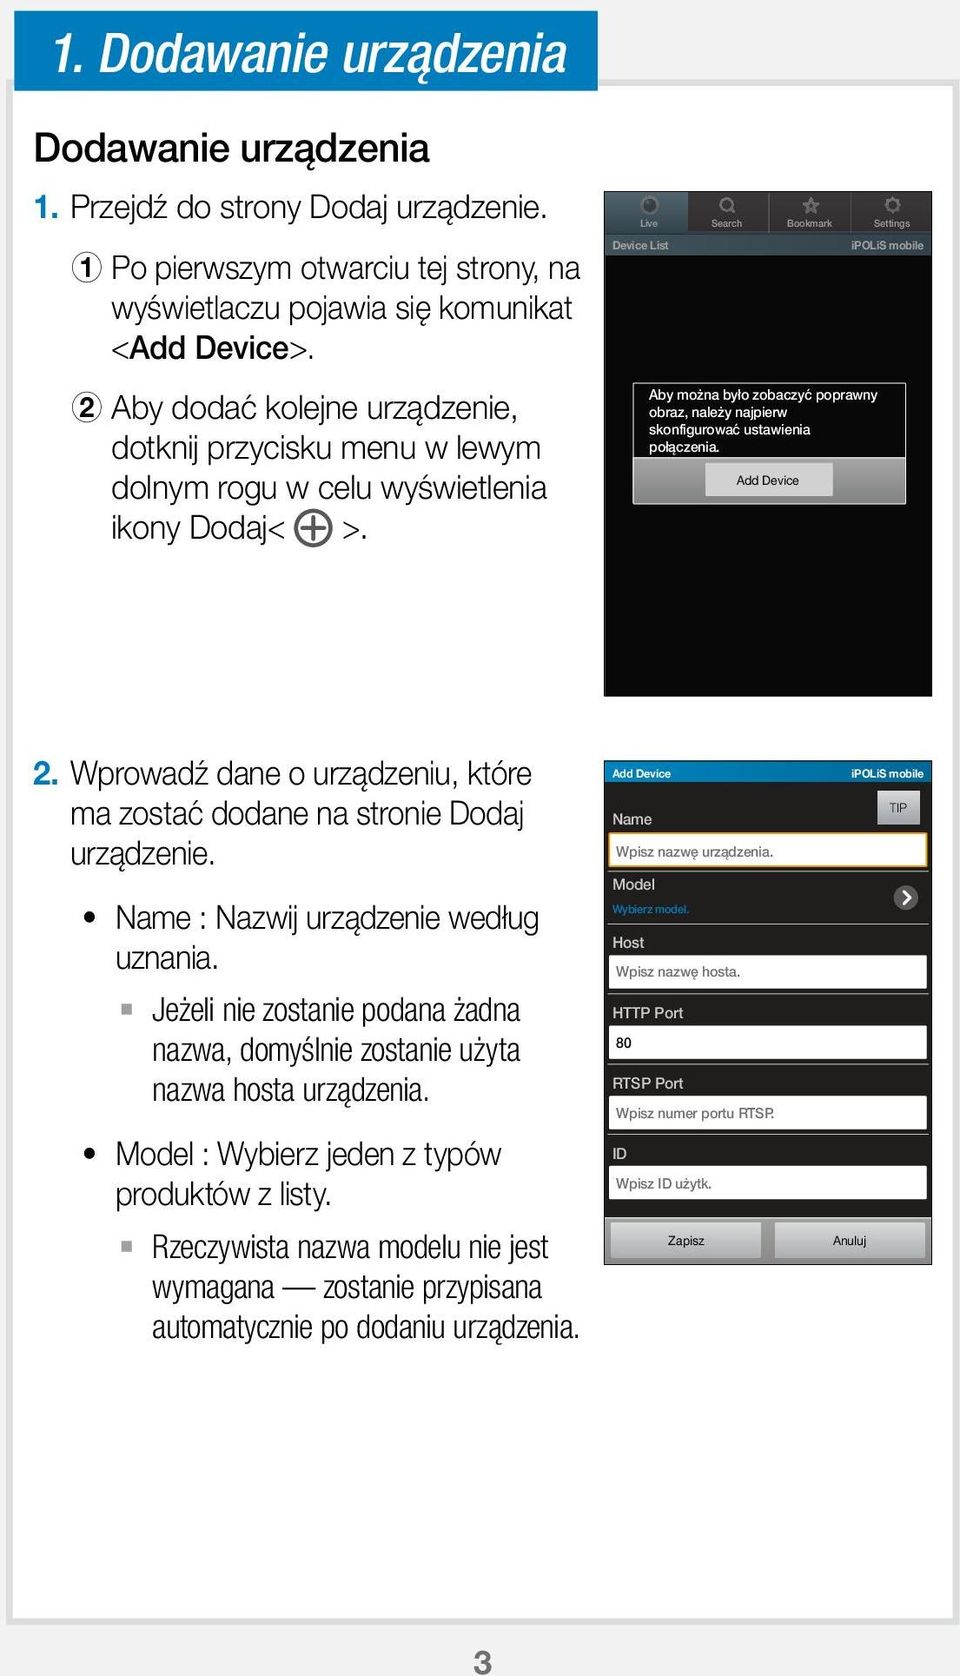 Device List ipolis mobile B Aby dodać kolejne urządzenie, dotknij przycisku menu w lewym dolnym rogu w celu wyświetlenia ikony Dodaj< >.